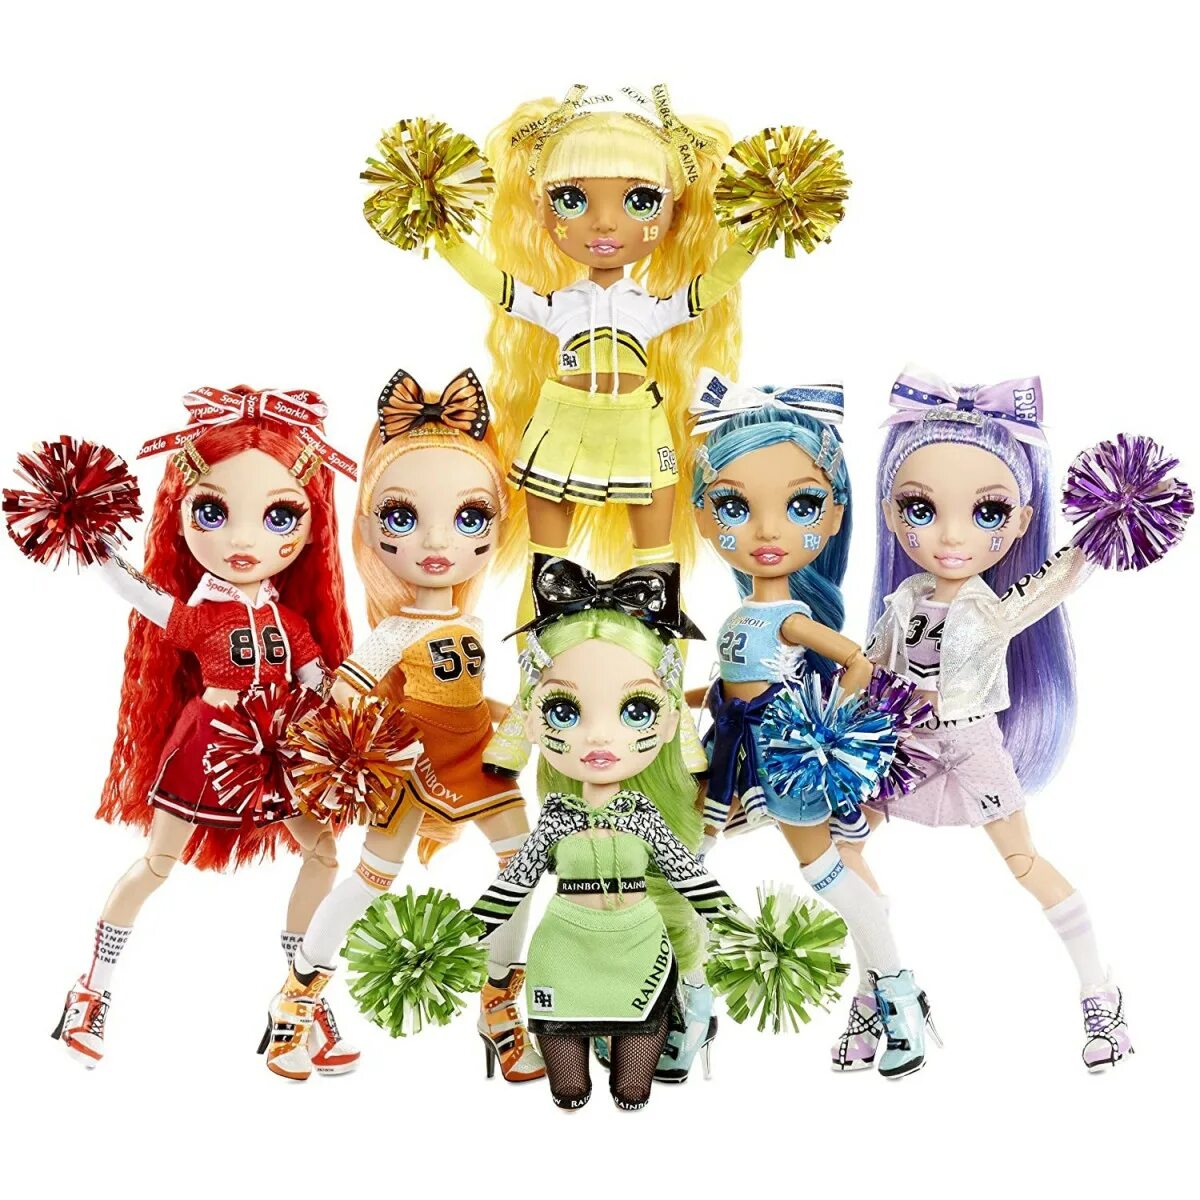 Rainbow High куклы. Rainbow High куклы Cheer. Куклы Рейнбоу Хай Вайолет. Кукла Rainbow High Cheer Violet Willow.